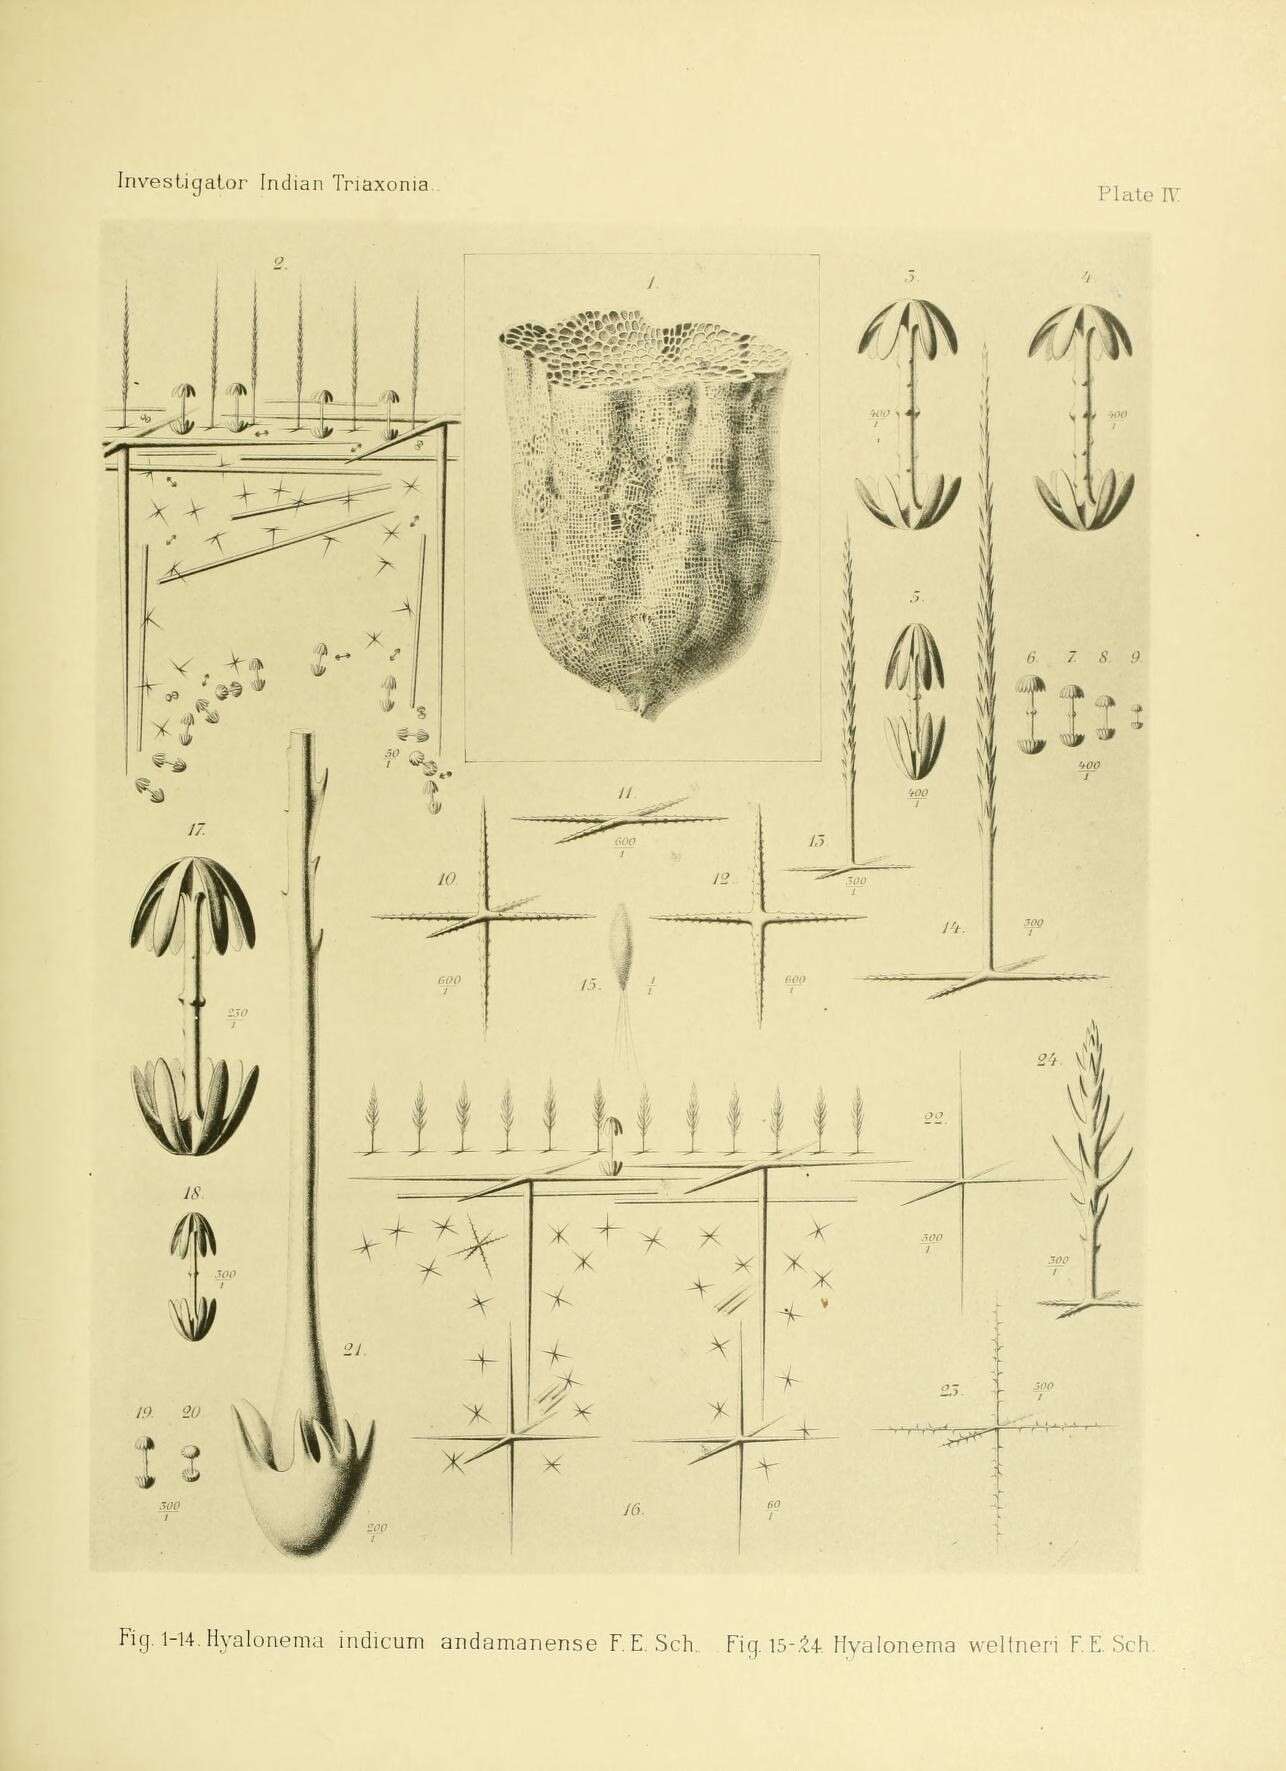 Sivun Hyalonema (Coscinonema) indicum Schulze 1895 kuva